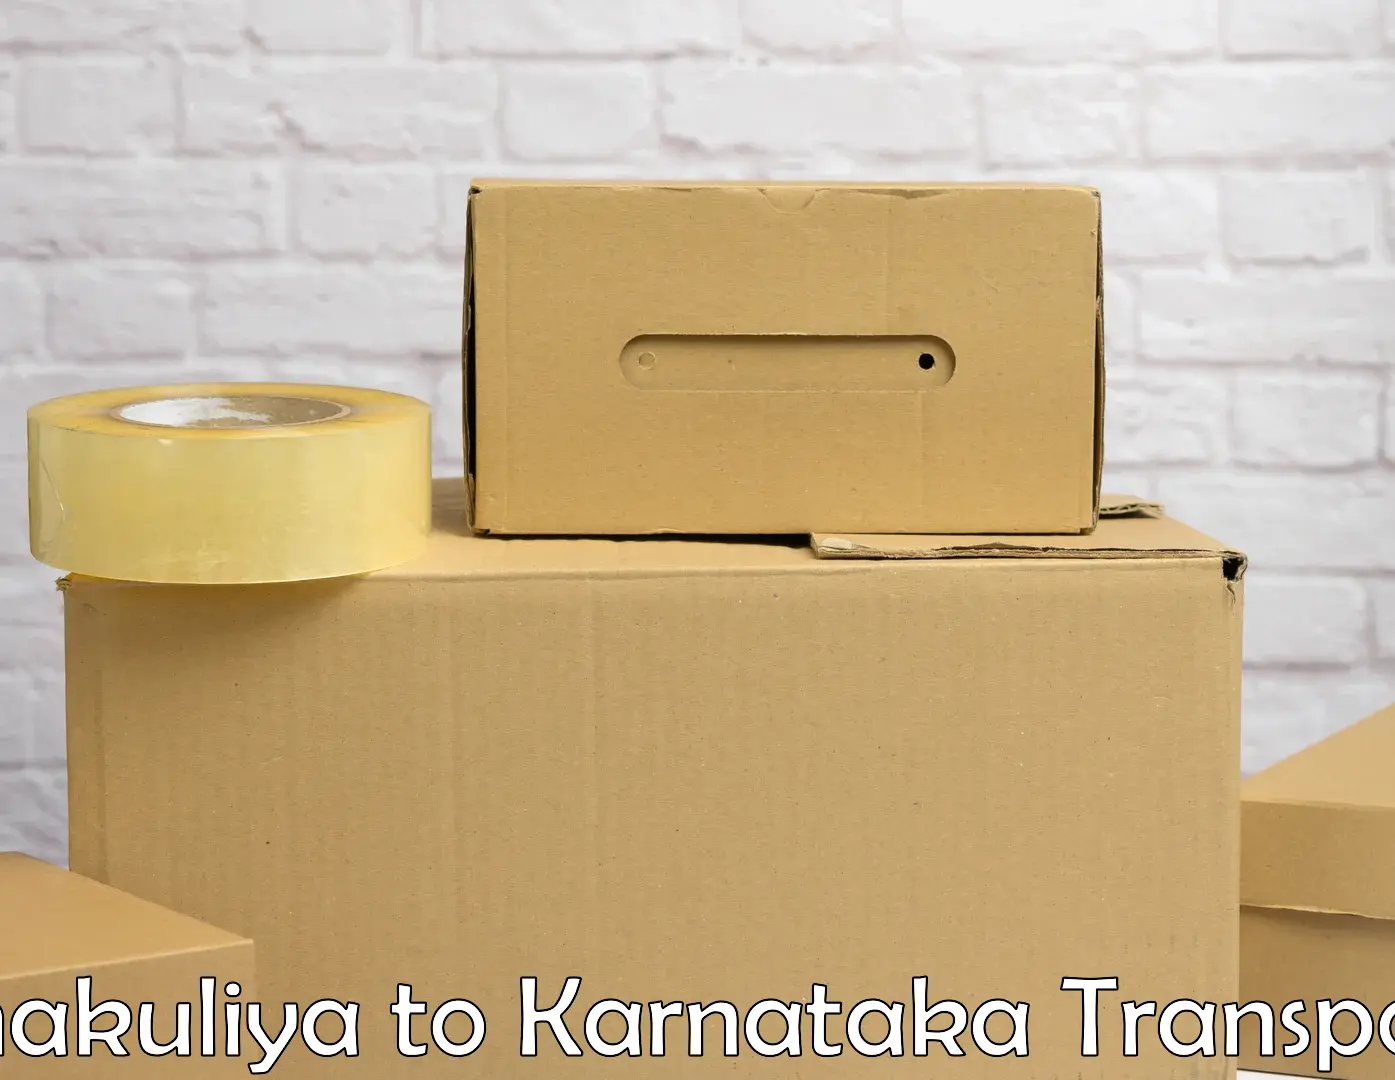 Truck transport companies in India Chakuliya to Yenepoya Mangalore